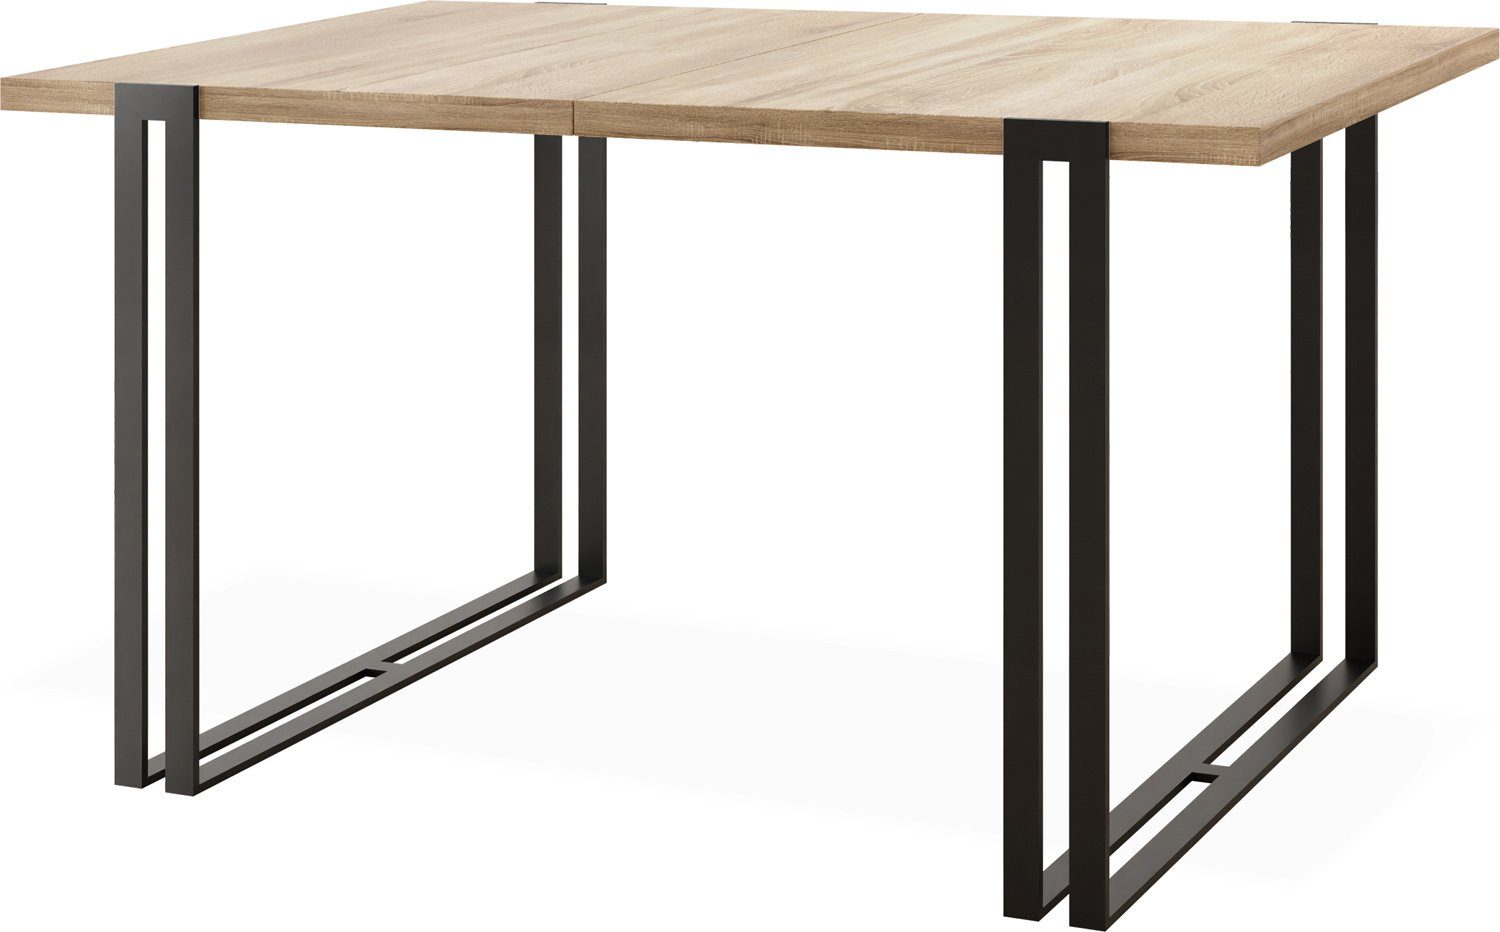 WFL GROUP Esstisch Marco, Tisch Loft-Stil im Sonoma mit Eiche Schwarze Metallbeinen